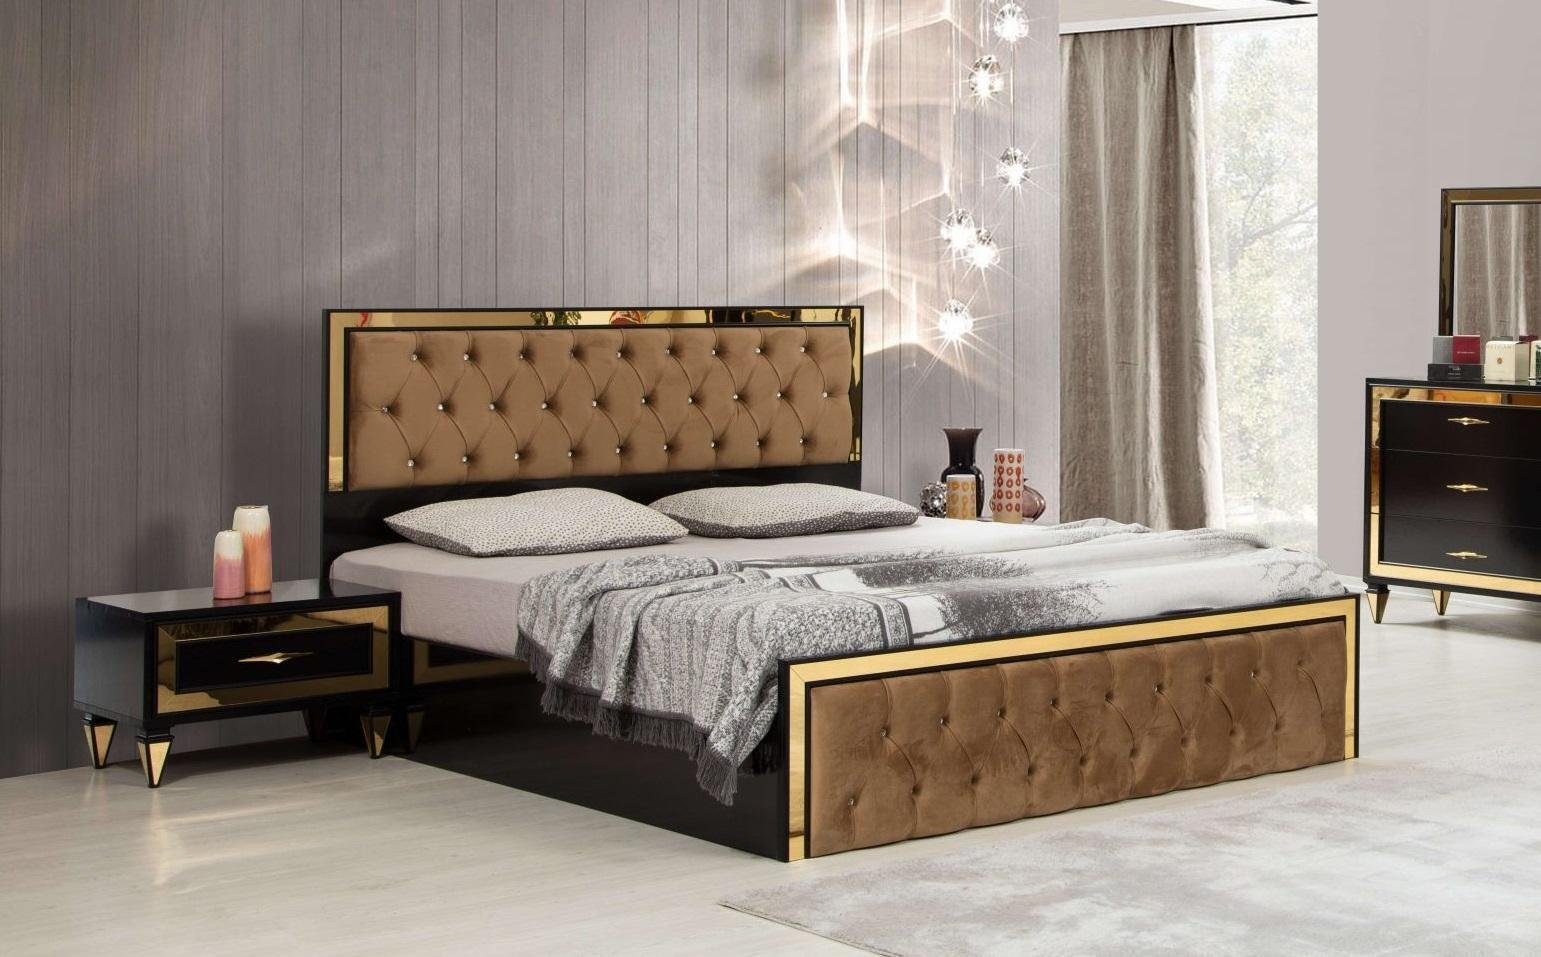 JVmoebel Schlafzimmer-Set Schwarz-Beiges Luxus Chesterfield Doppelbett mit Edelstahl, Made In Europe